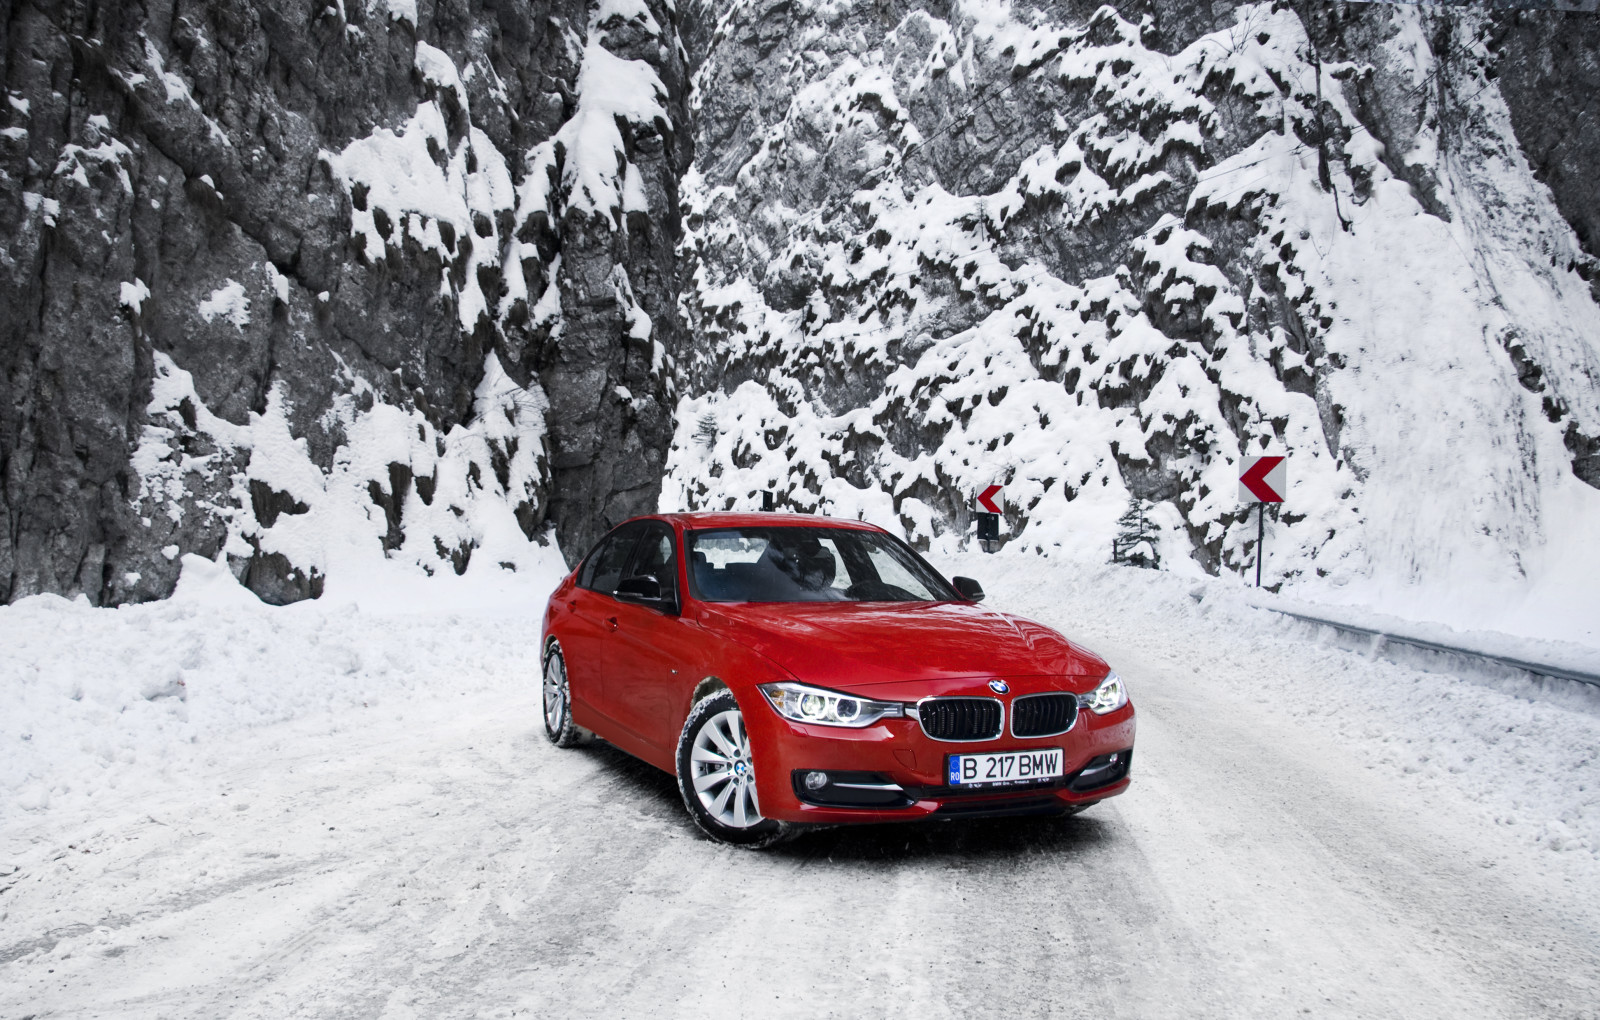 tuyết, mùa đông, đường, màu đỏ, núi, xe BMW, F30, Bộ 3